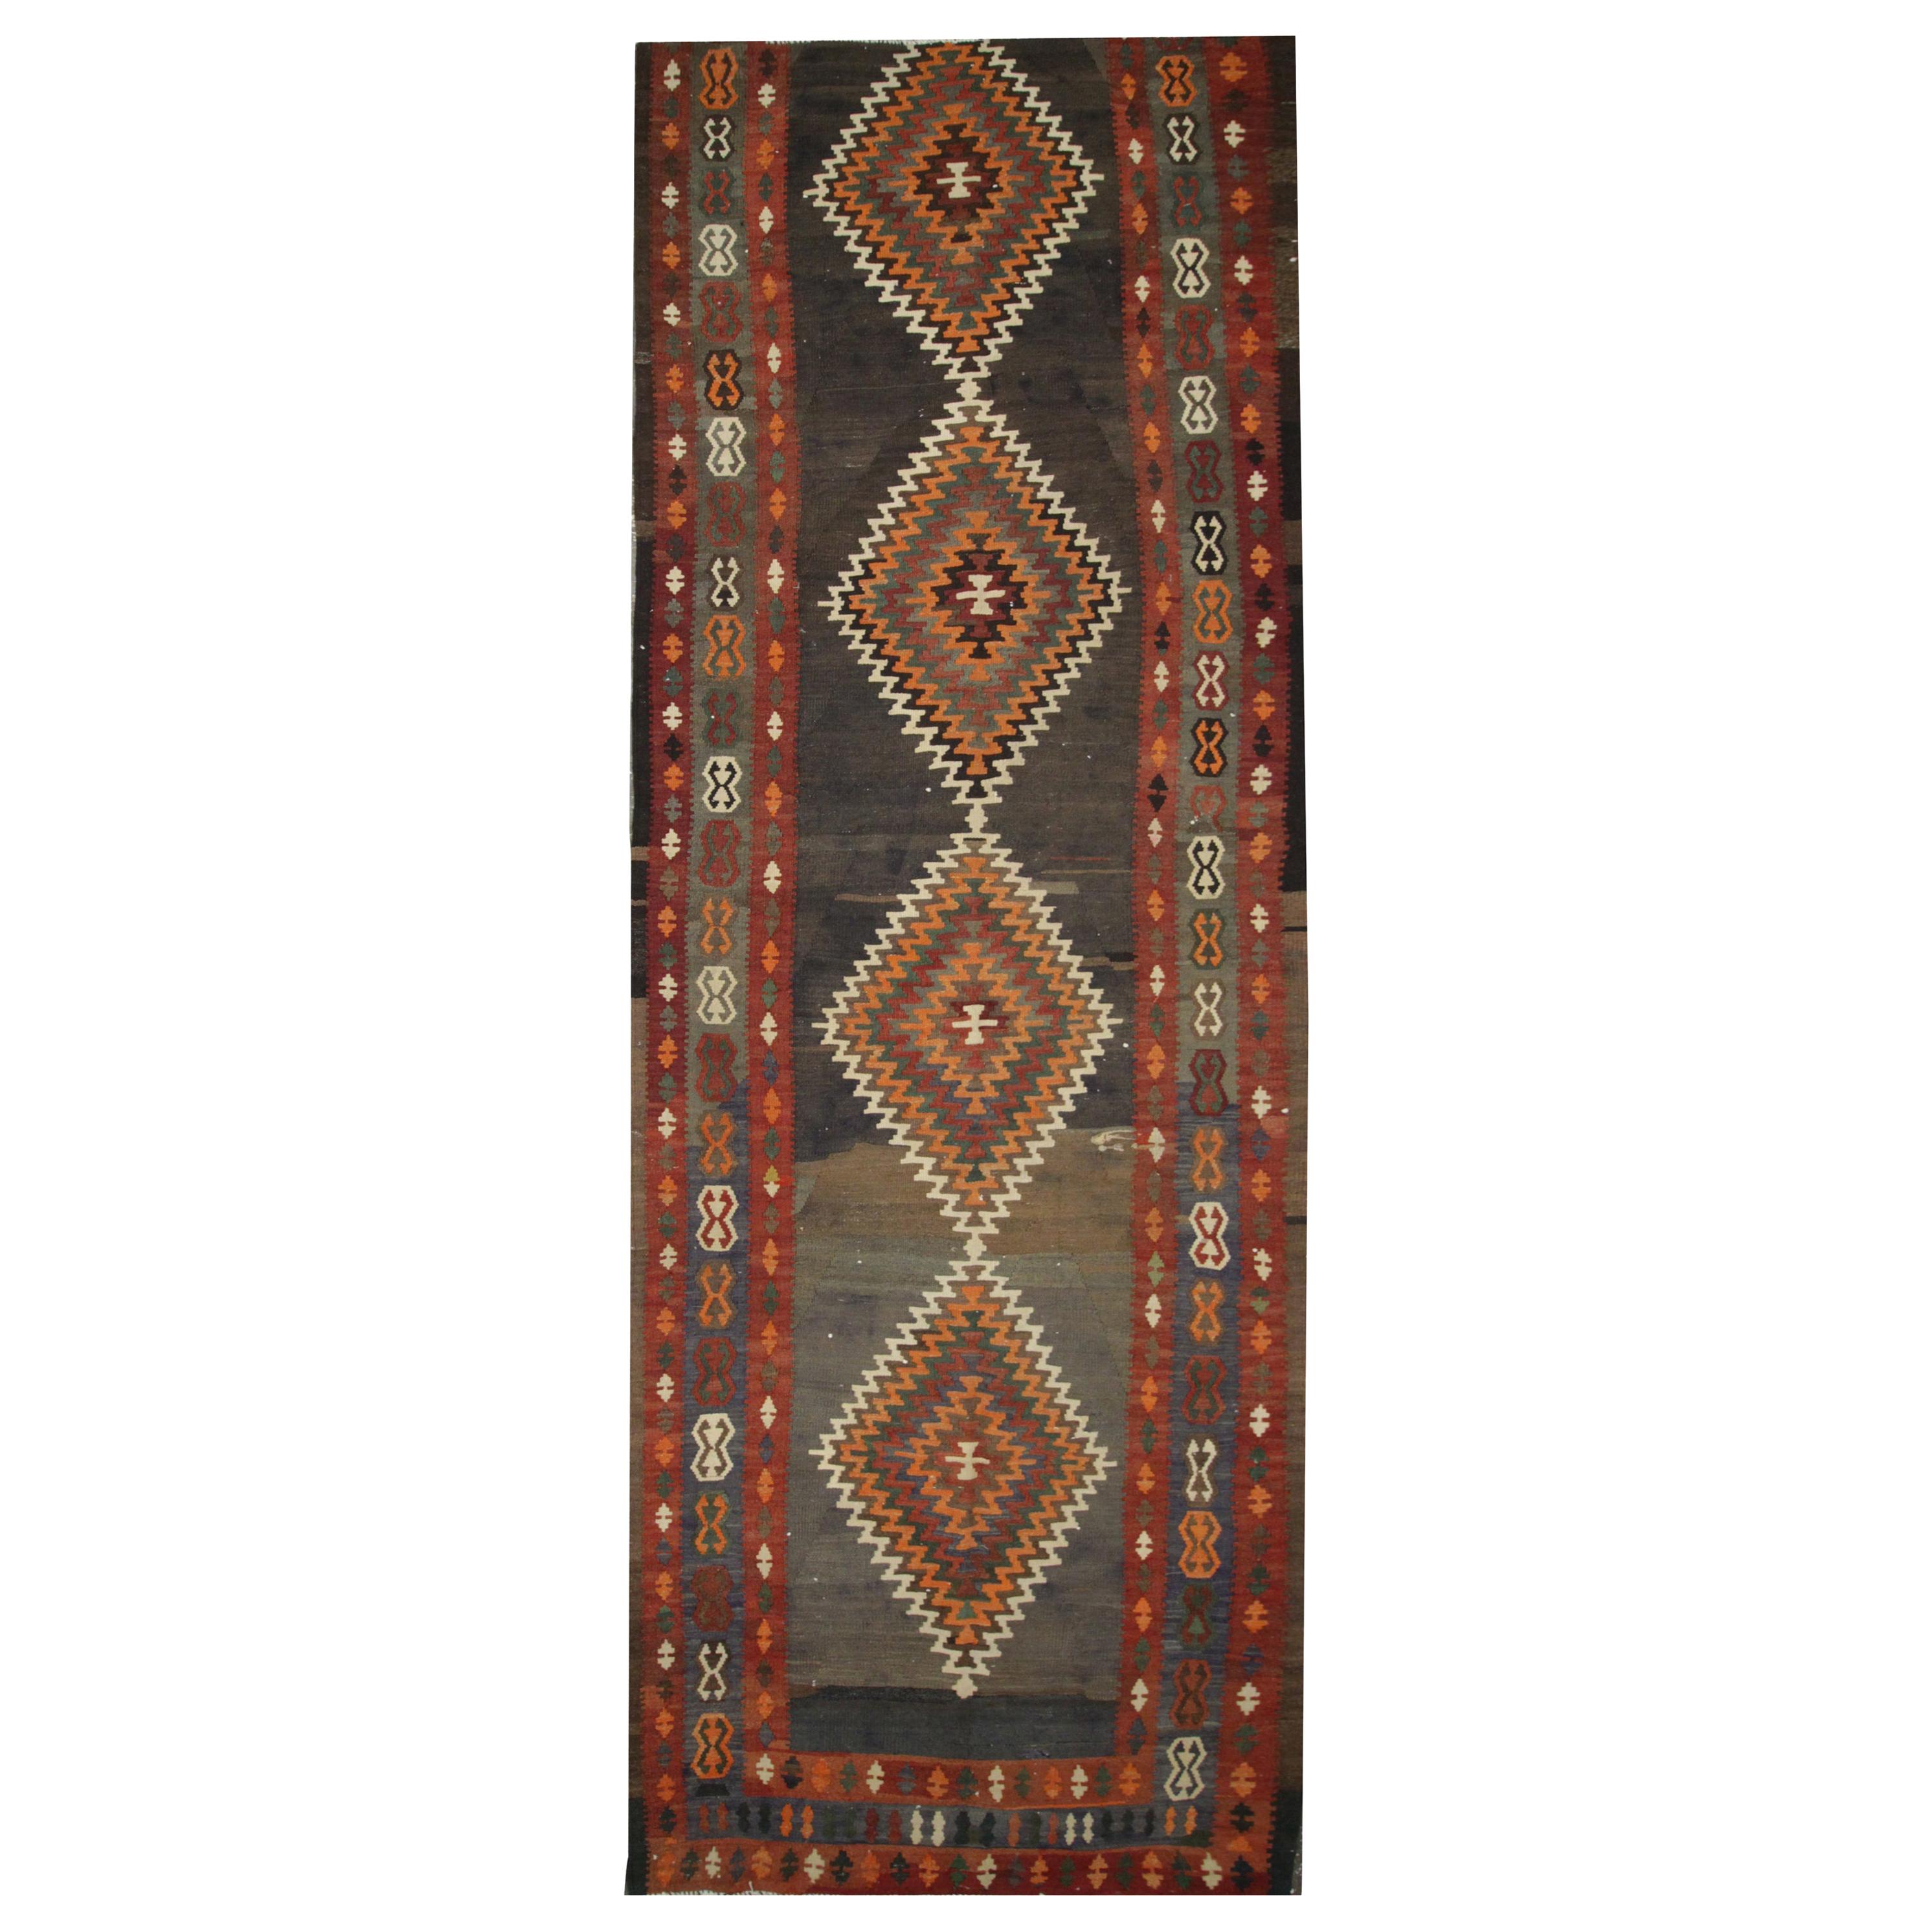 Wool Kilim Rug, Handmade Tribal Runner Carpet Vintage Brown Orange